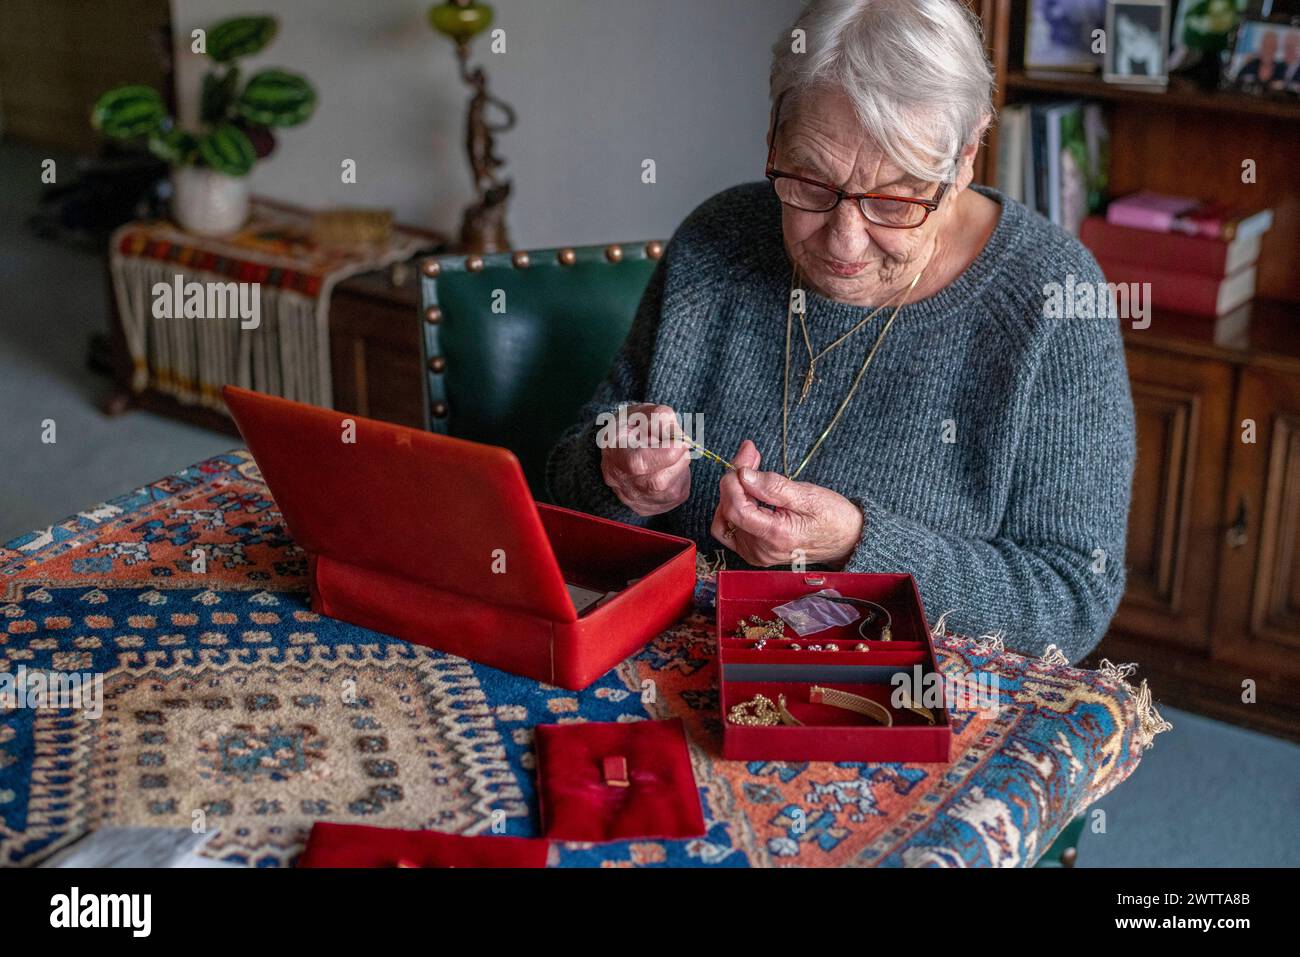 Elderly woman cherishing memories with her jewelry box. Stock Photo